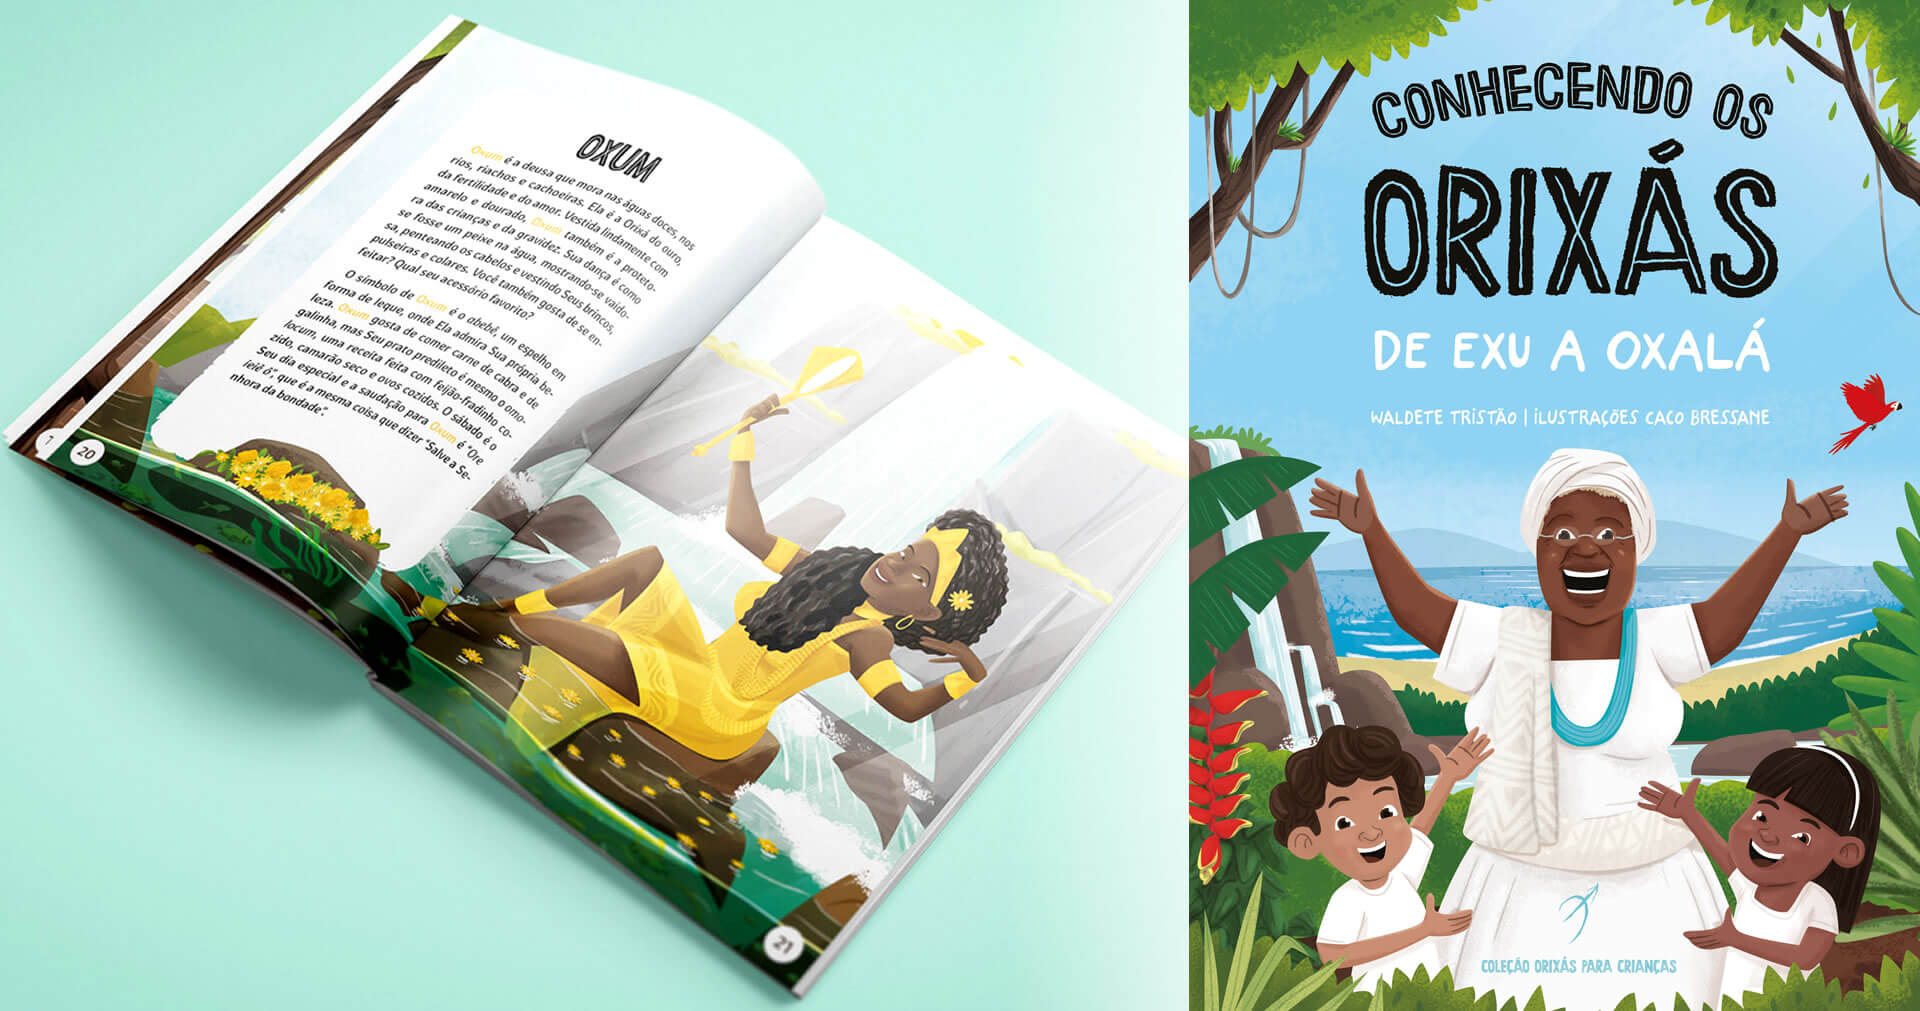 Orixás Para Crianças | Escrito por Waldete Tristão, Conhecendo os Orixás é um livro glorioso destinado a educar os jovens sobre a beleza da espiritualidade africana.